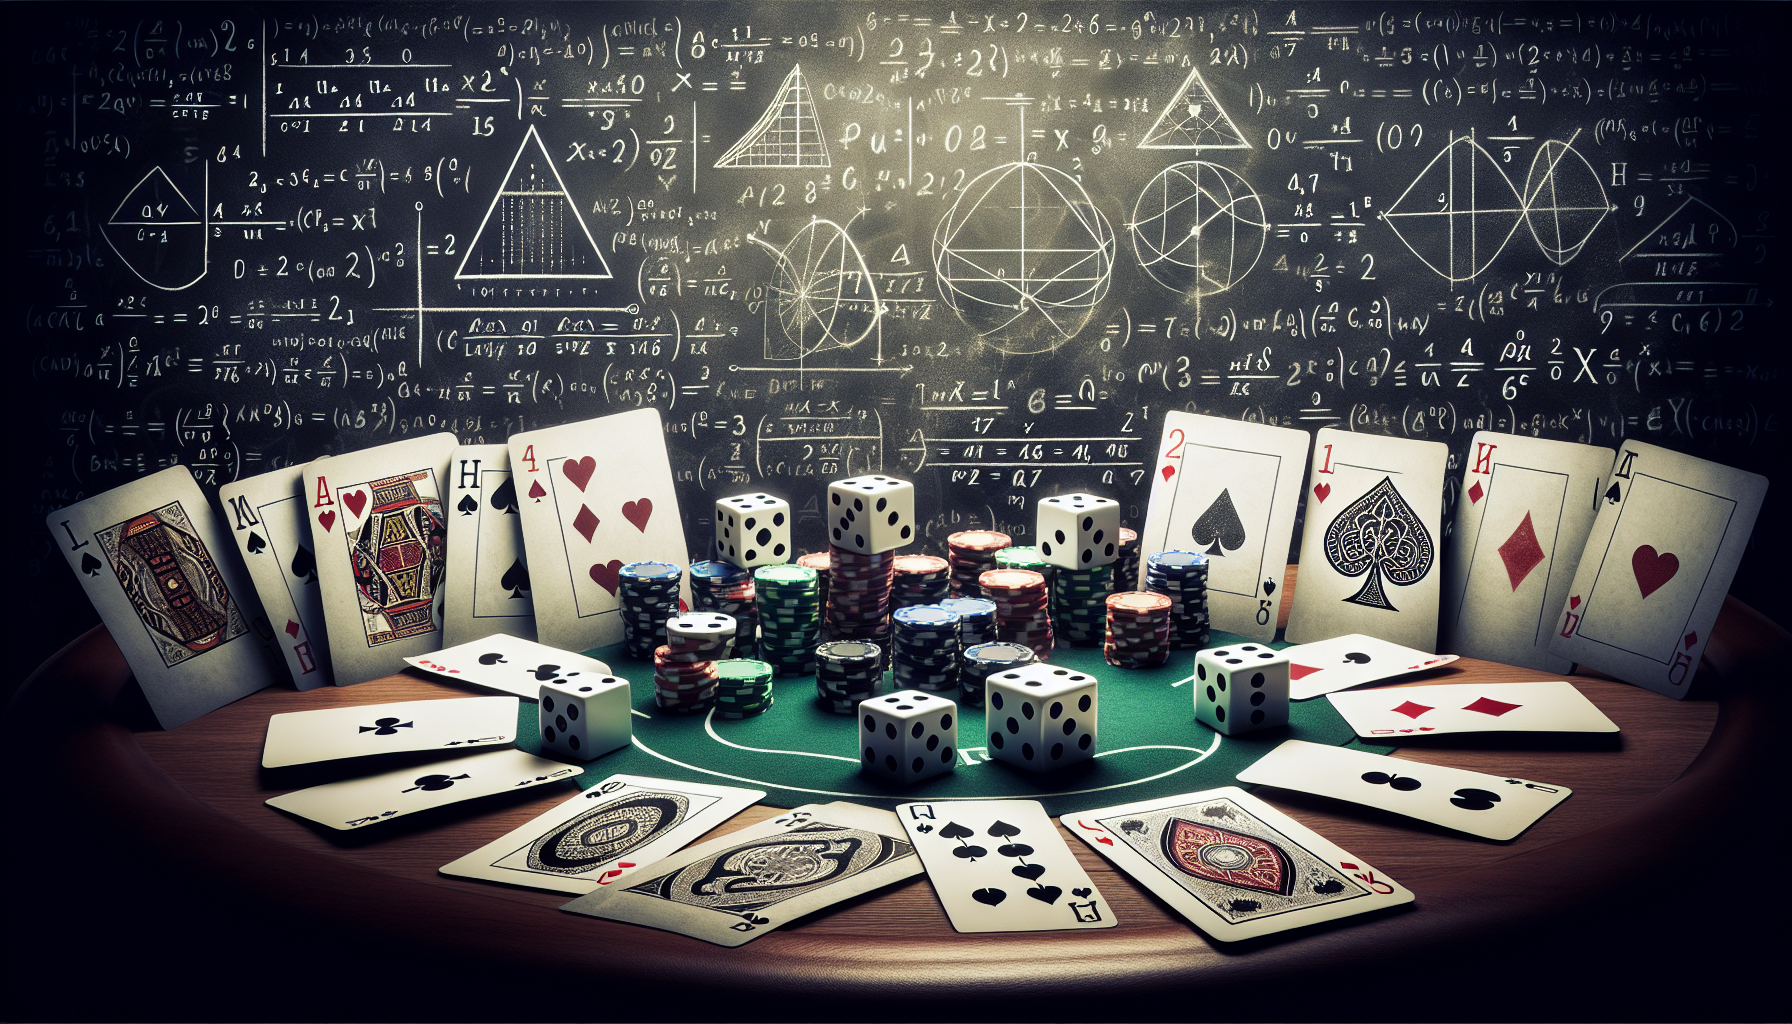 découvrez l'association passionnante entre le poker et les mathématiques dans cet article captivant.